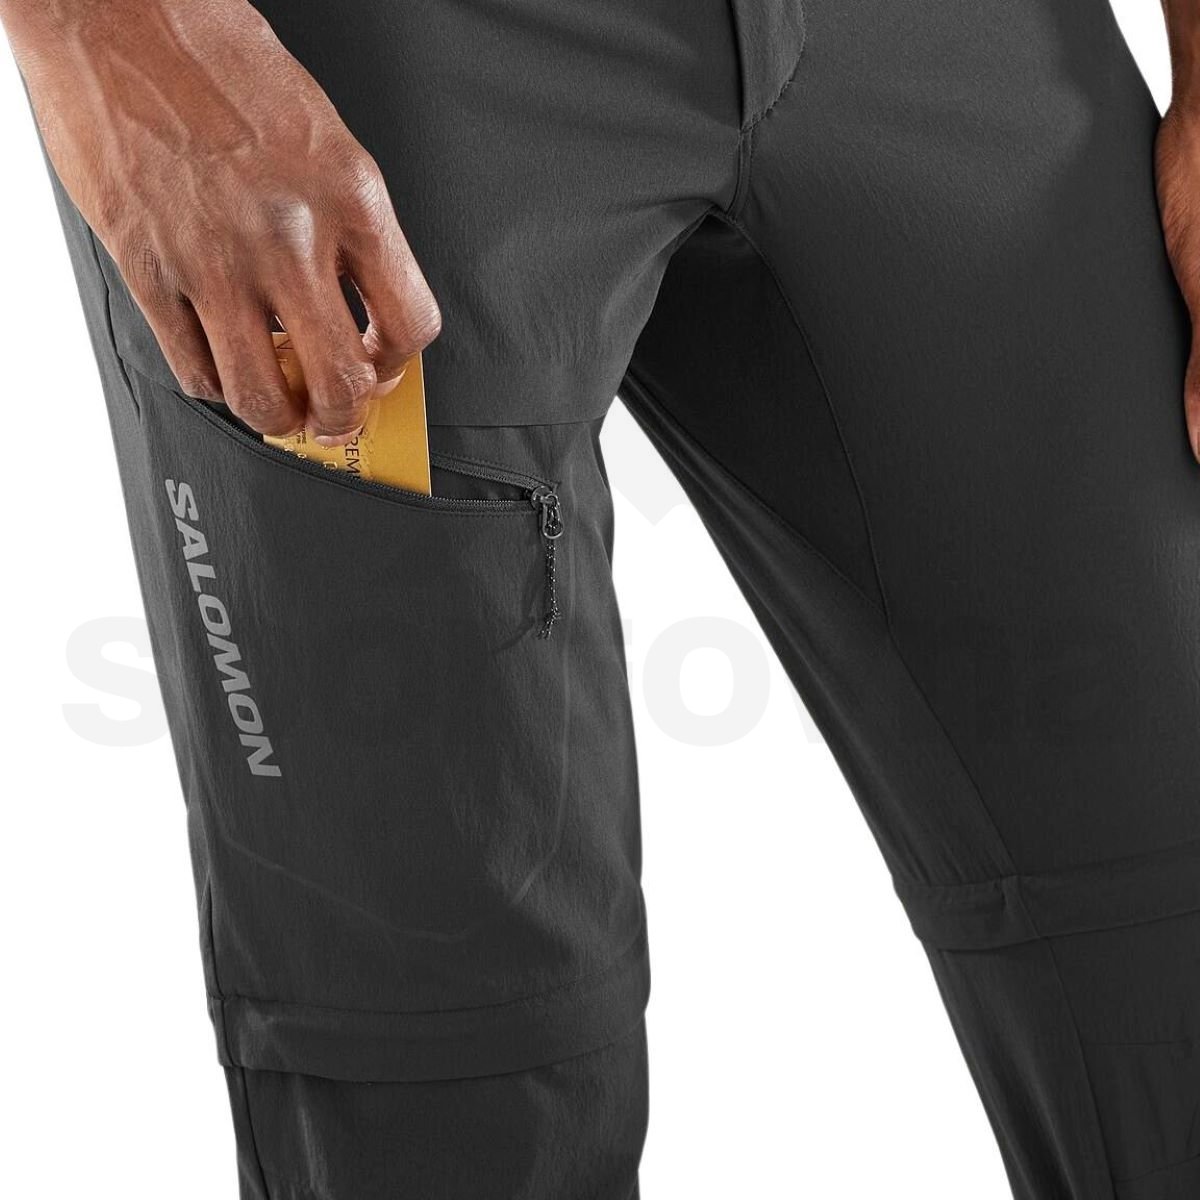 Kalhoty Salomon Wayfarer Zip Off Pants M - černá